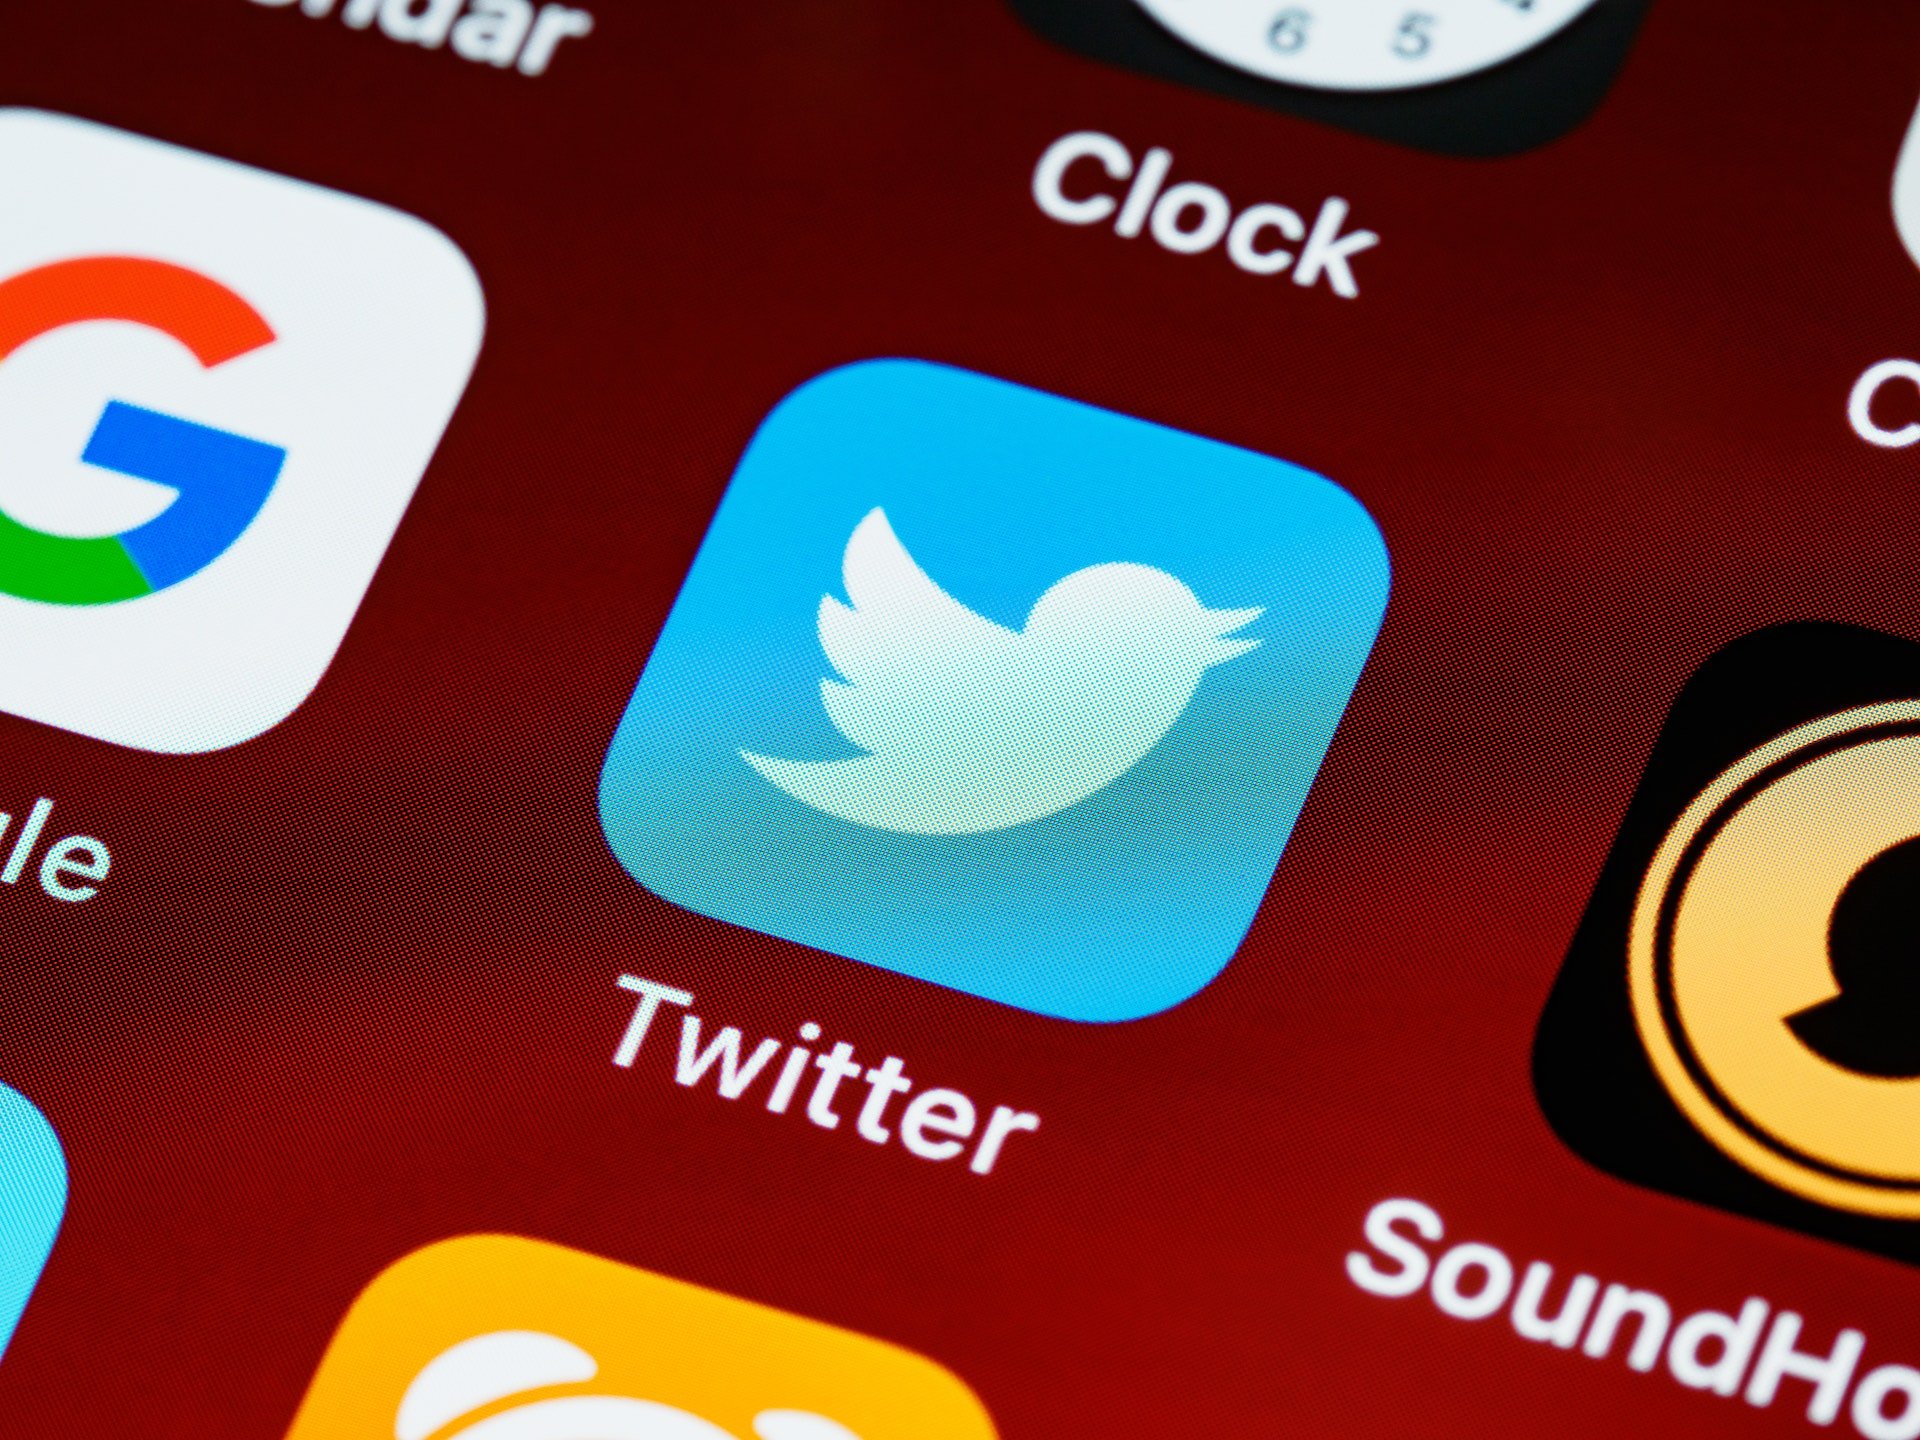 El exjefe de seguridad de Twitter admite "graves problemas de ciberseguridad" en la red